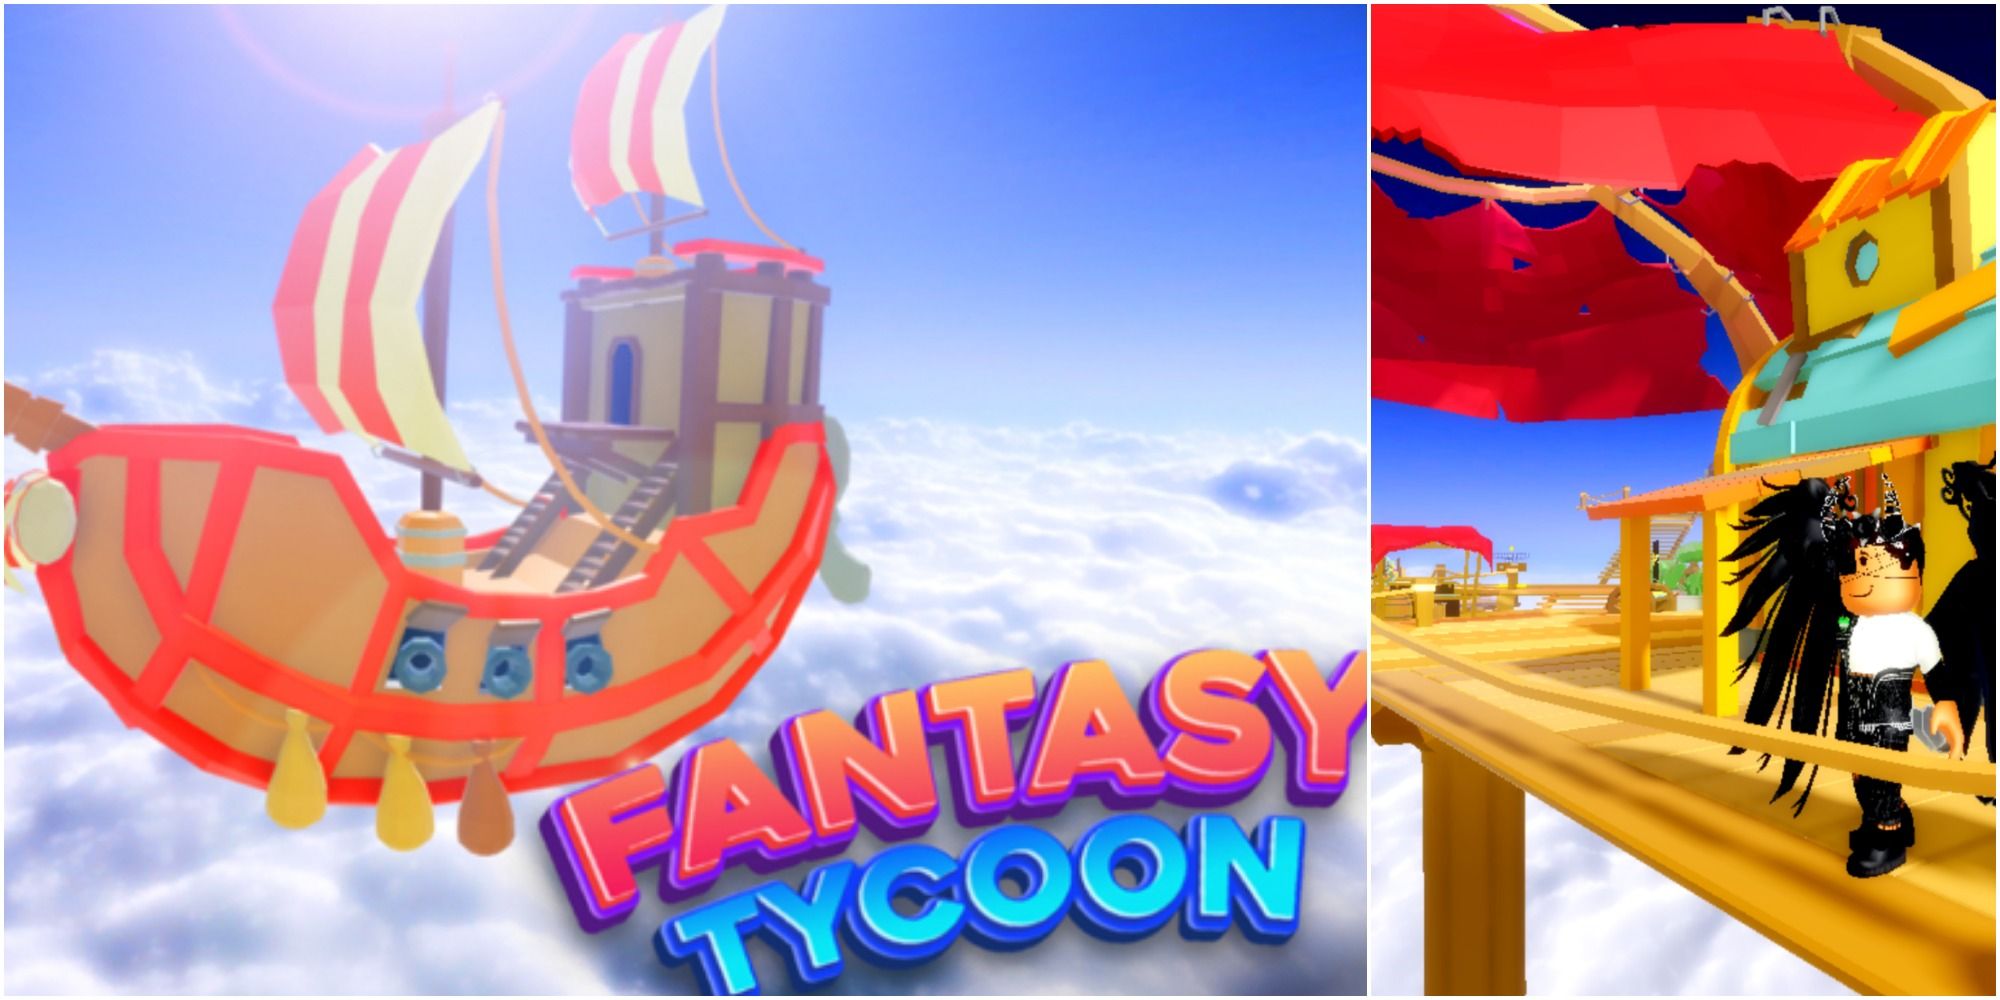 Разделите изображение корабля из Fantasy Tycoon от Roblox слева и игрока, стоящего в своем магнате справа.